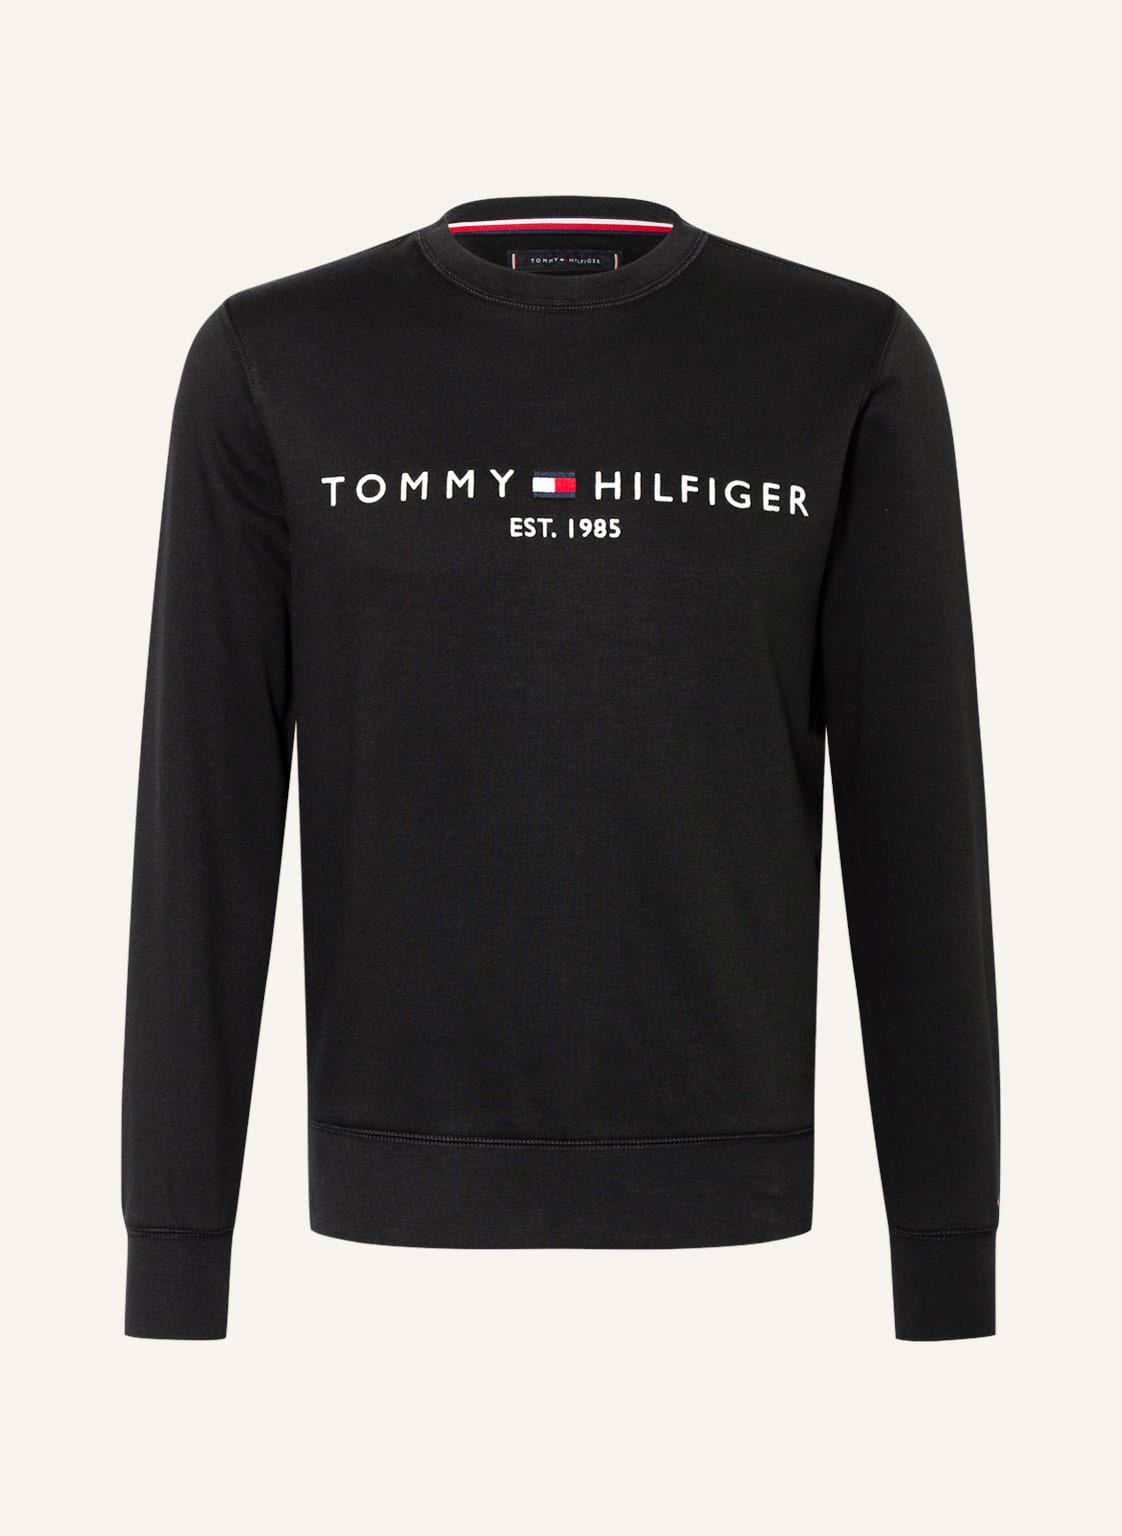 Tommy Hilfiger Sweatshirt schwarz von Tommy Hilfiger